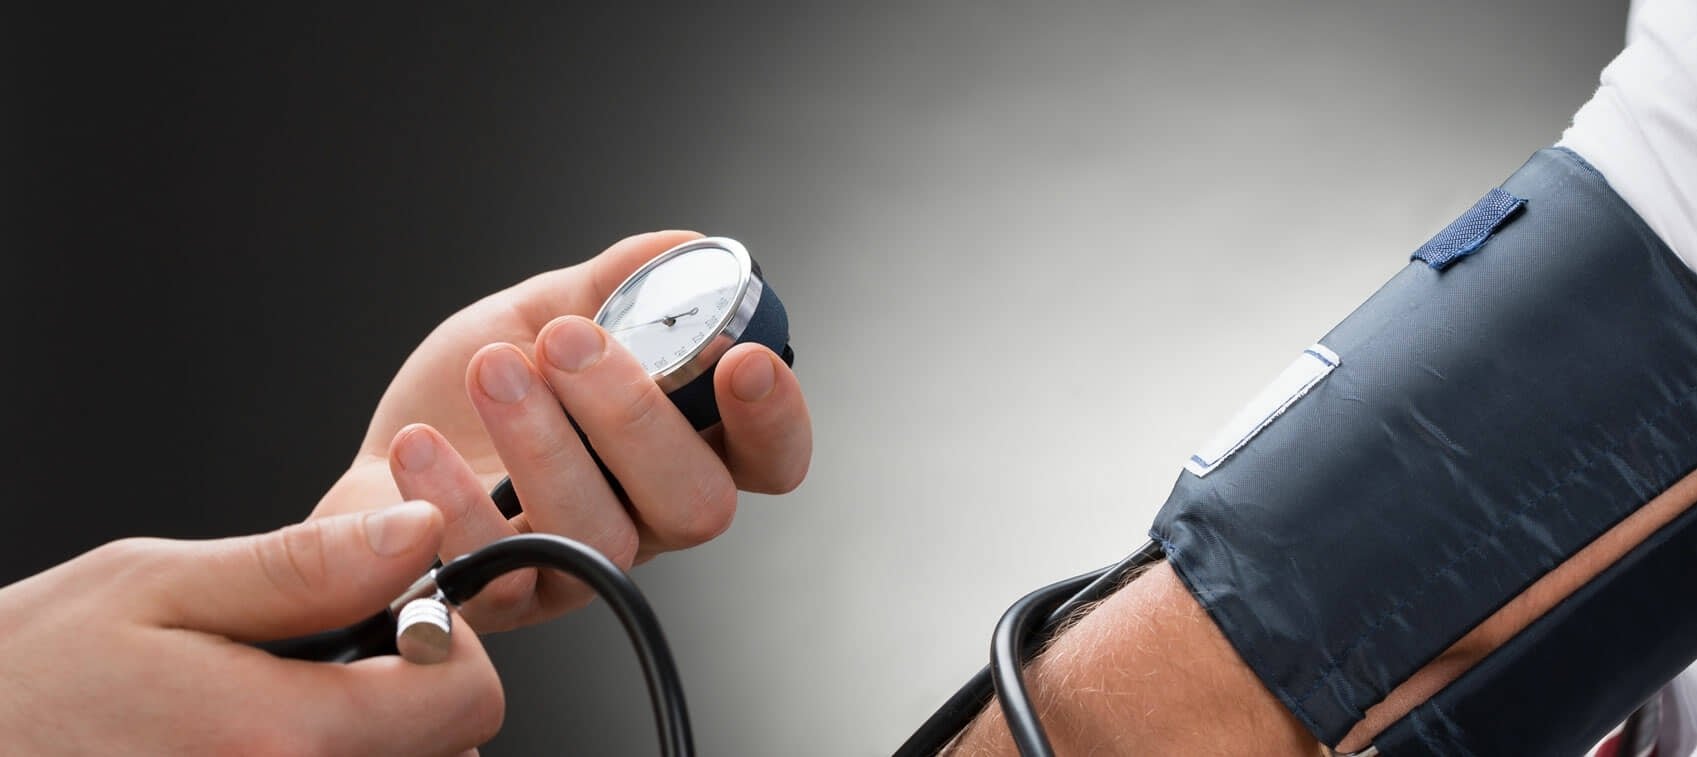 Magas vérnyomás élőben - Mit okozhat a magas vérnyomás, ha nem kezeljük?